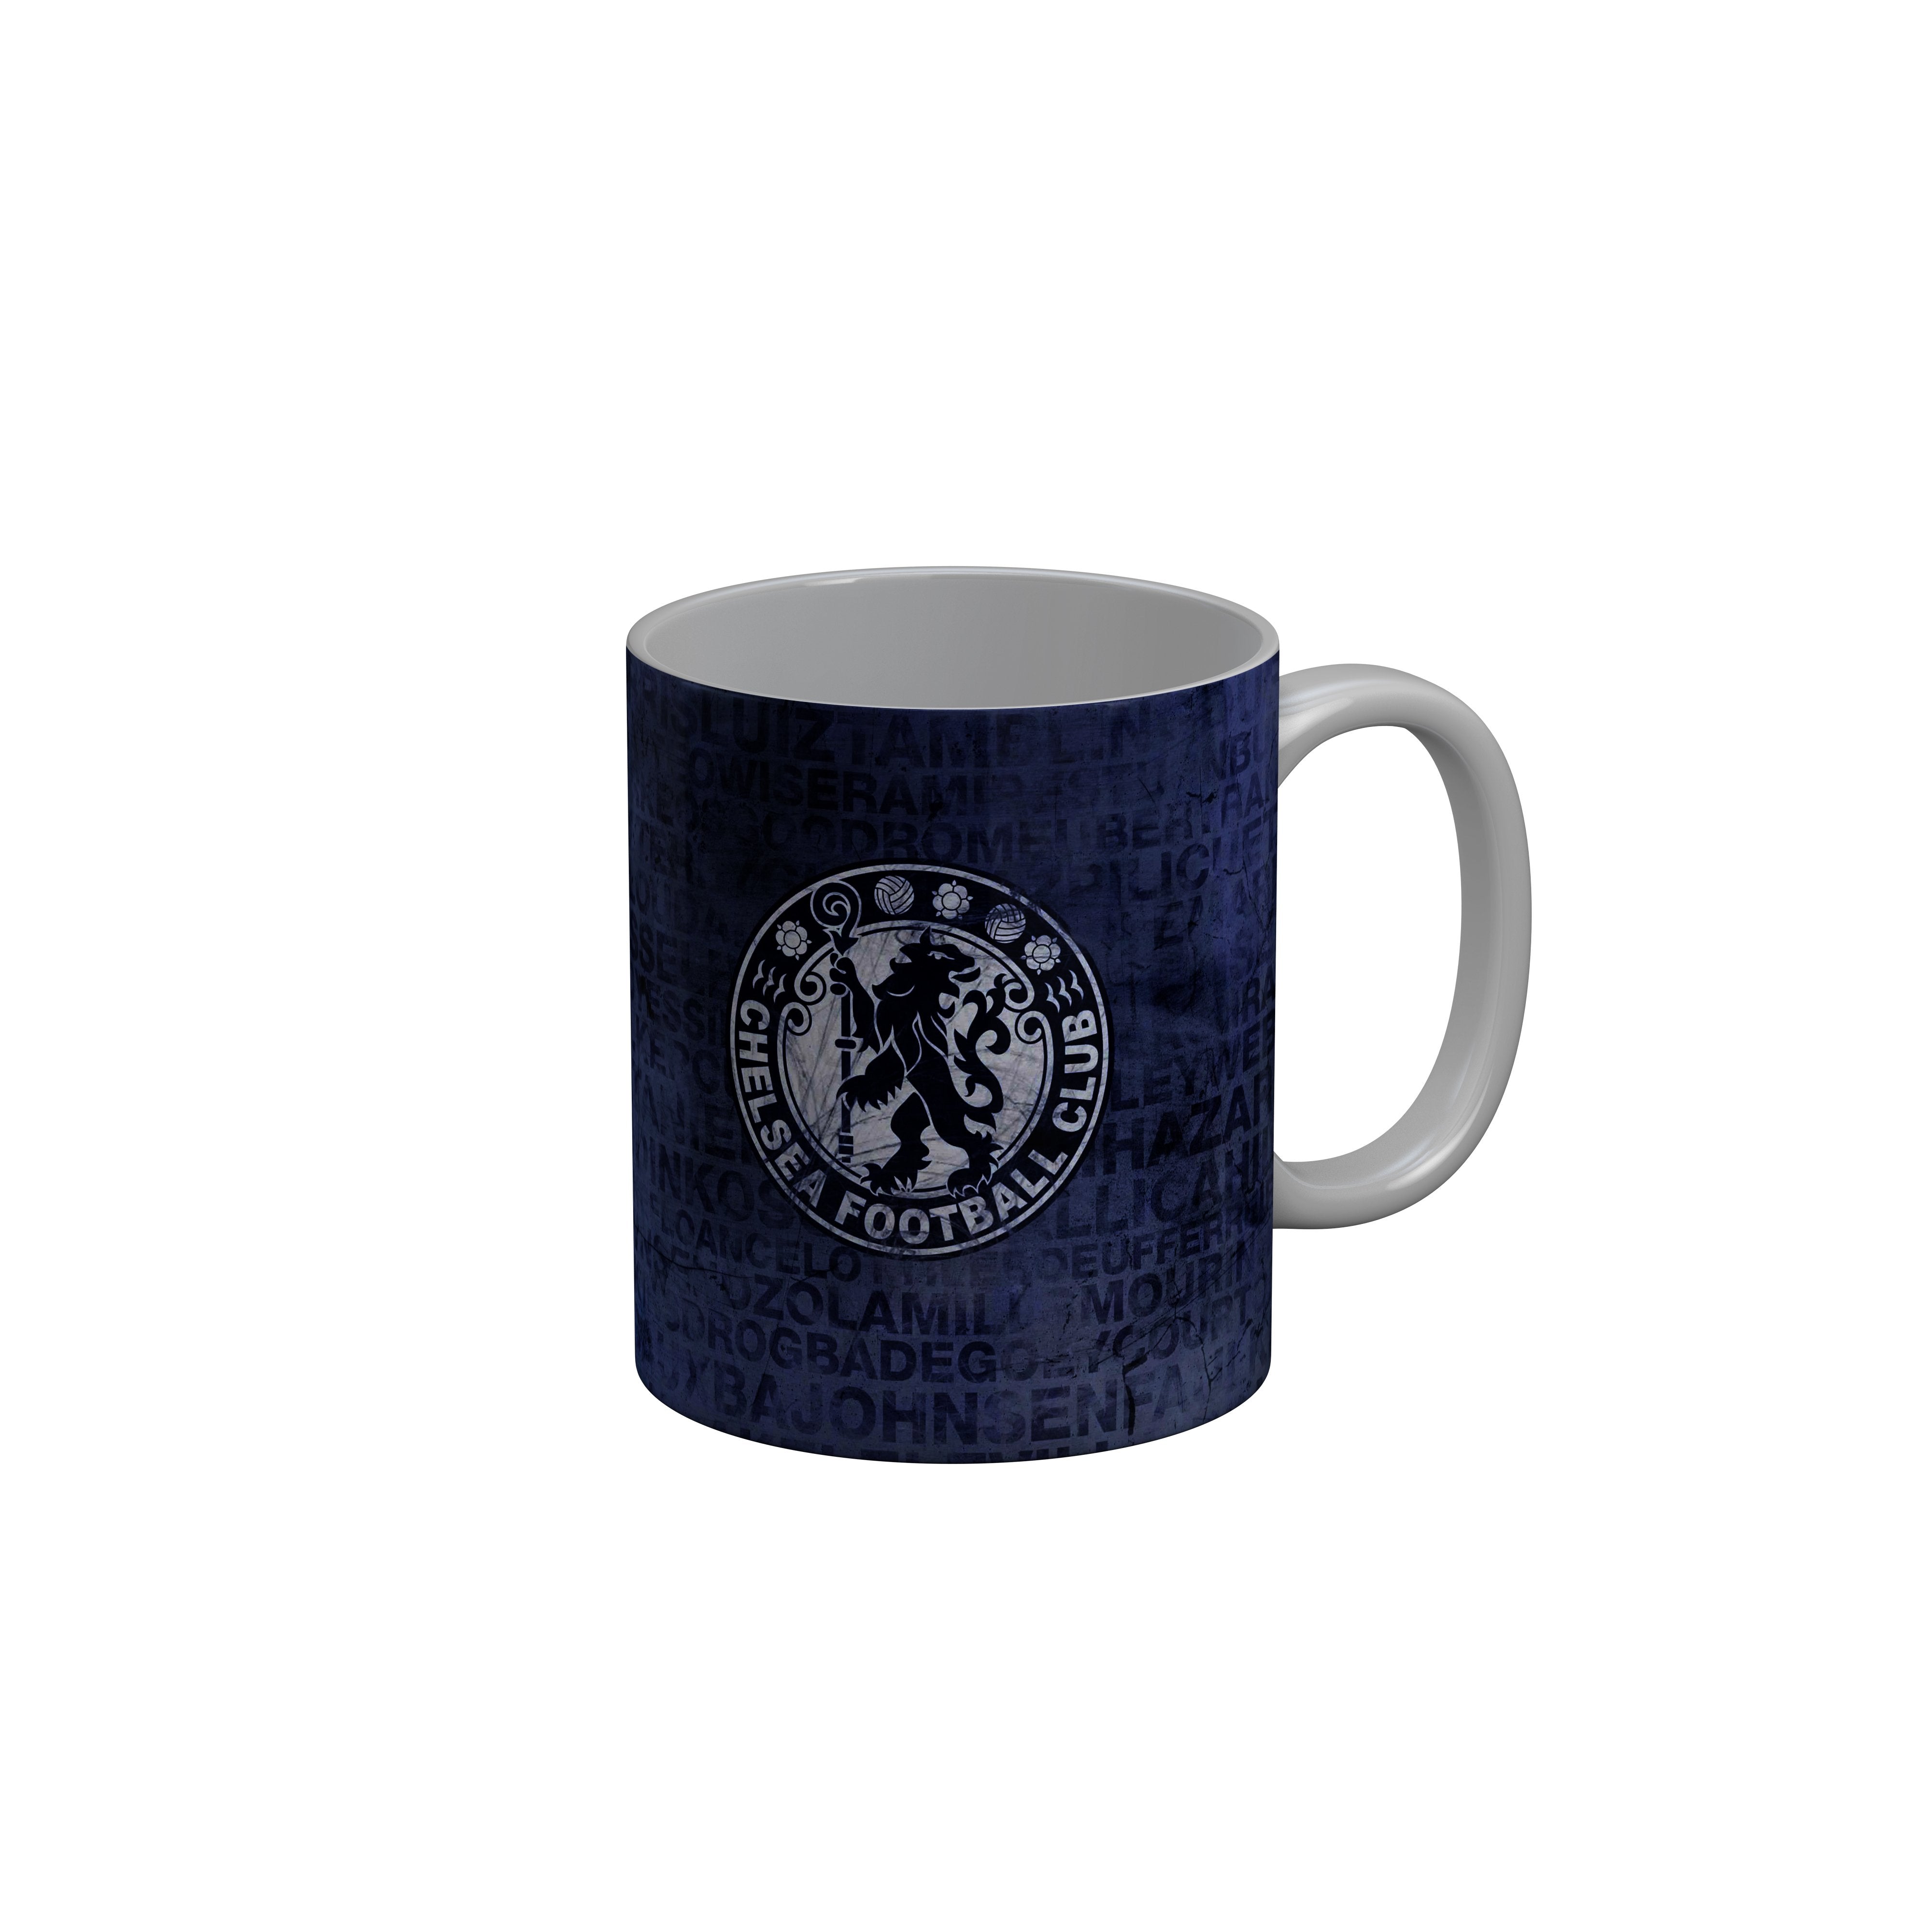 FashionRazor Chelsea Football Club Blue Ceramic Coffee Mug